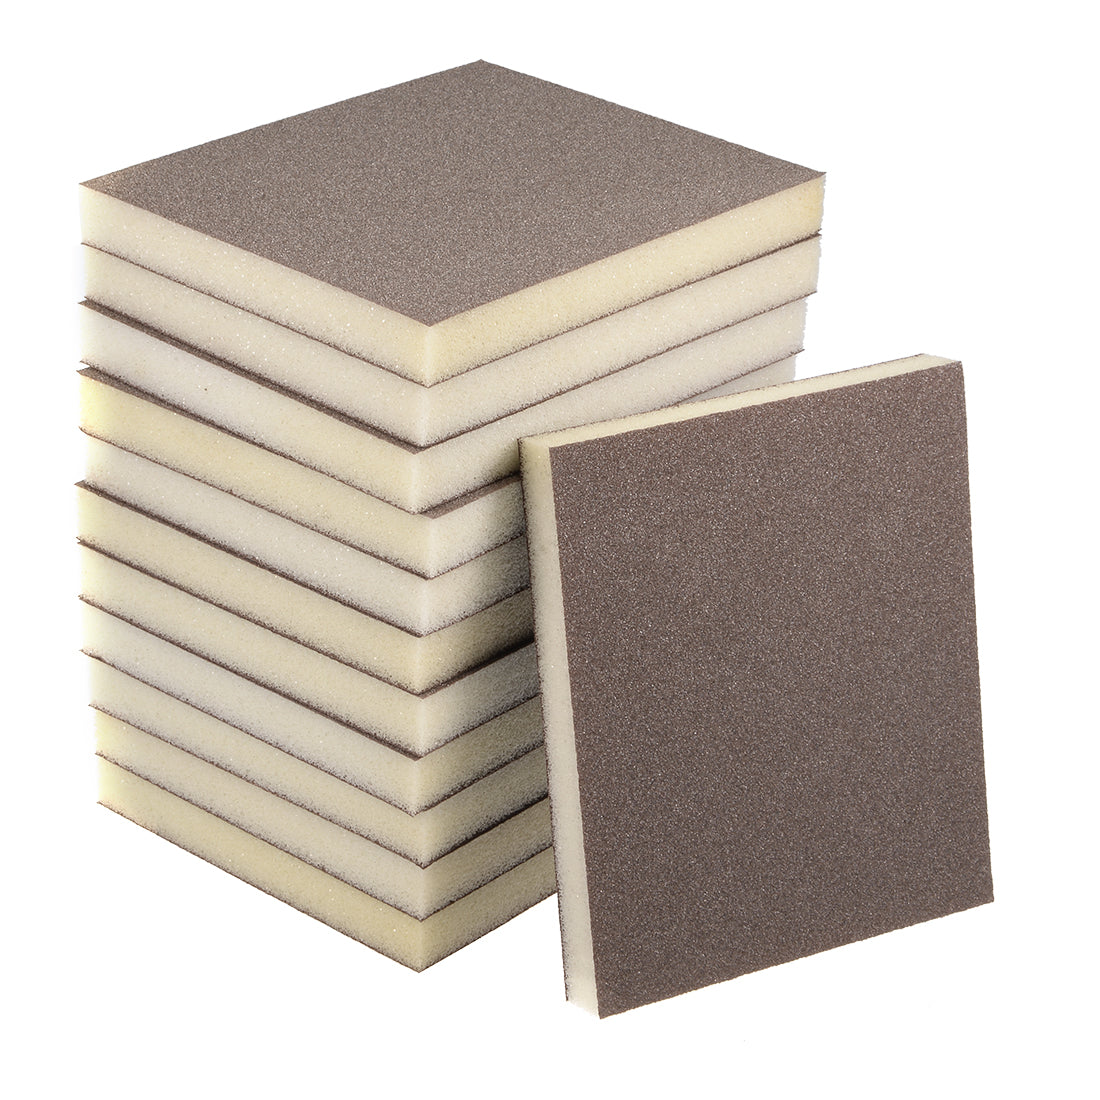 uxcell Uxcell Sanding Sponge, Coarse Grit 100 Grit Sanding Block Pad, 4.72" x 3.86" x 0.47" Size  12pcs